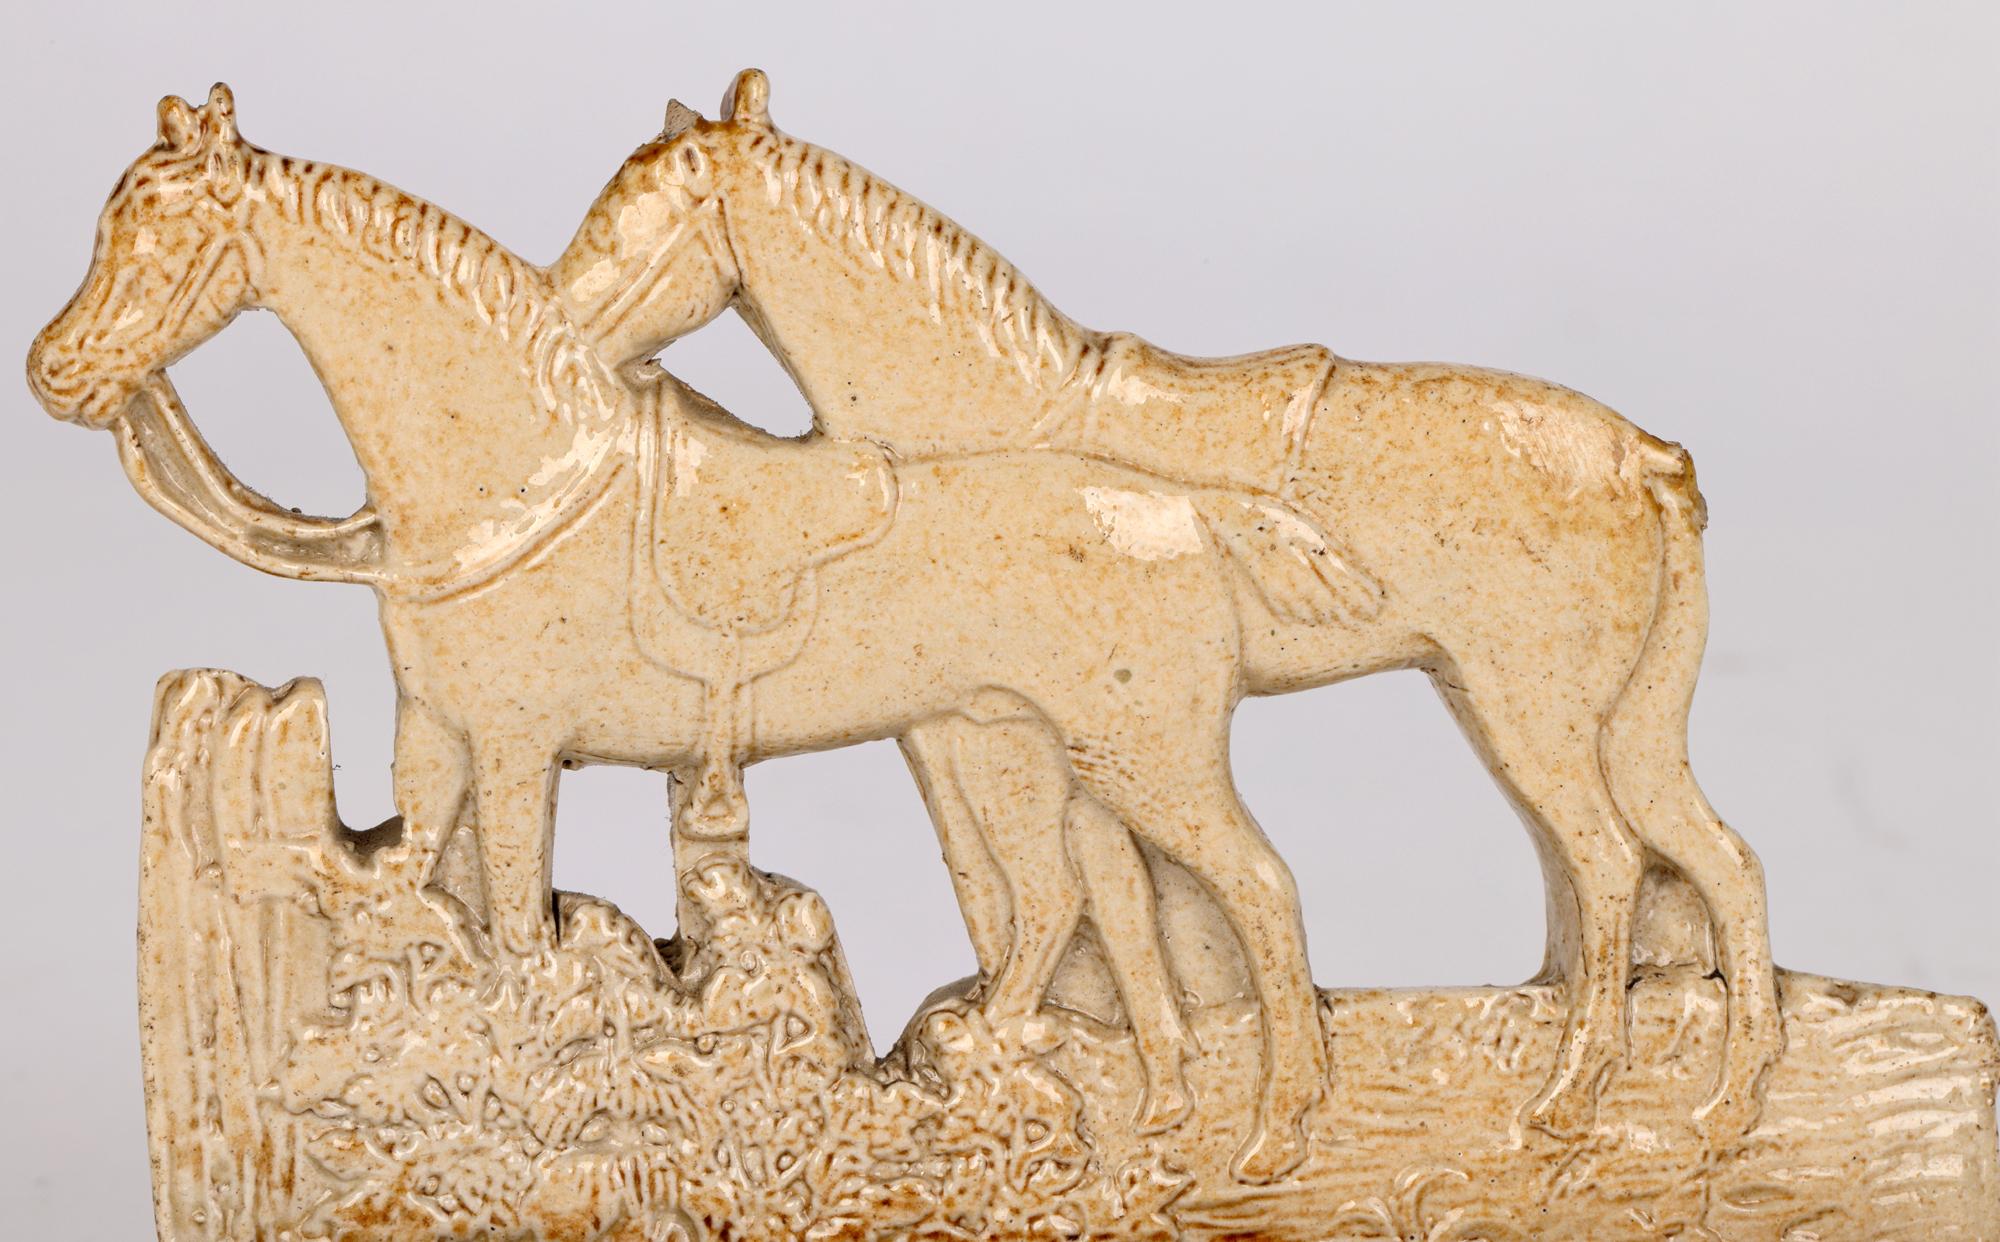 Un charmant, inhabituel et rare modèle anglais ancien de deux chevaux sellés, émaillé au sel de Brampton, datant d'environ 1830/40. Le modèle en grès montre les chevaux debout, l'un à côté de l'autre, sur une base solide de forme rectangulaire, le